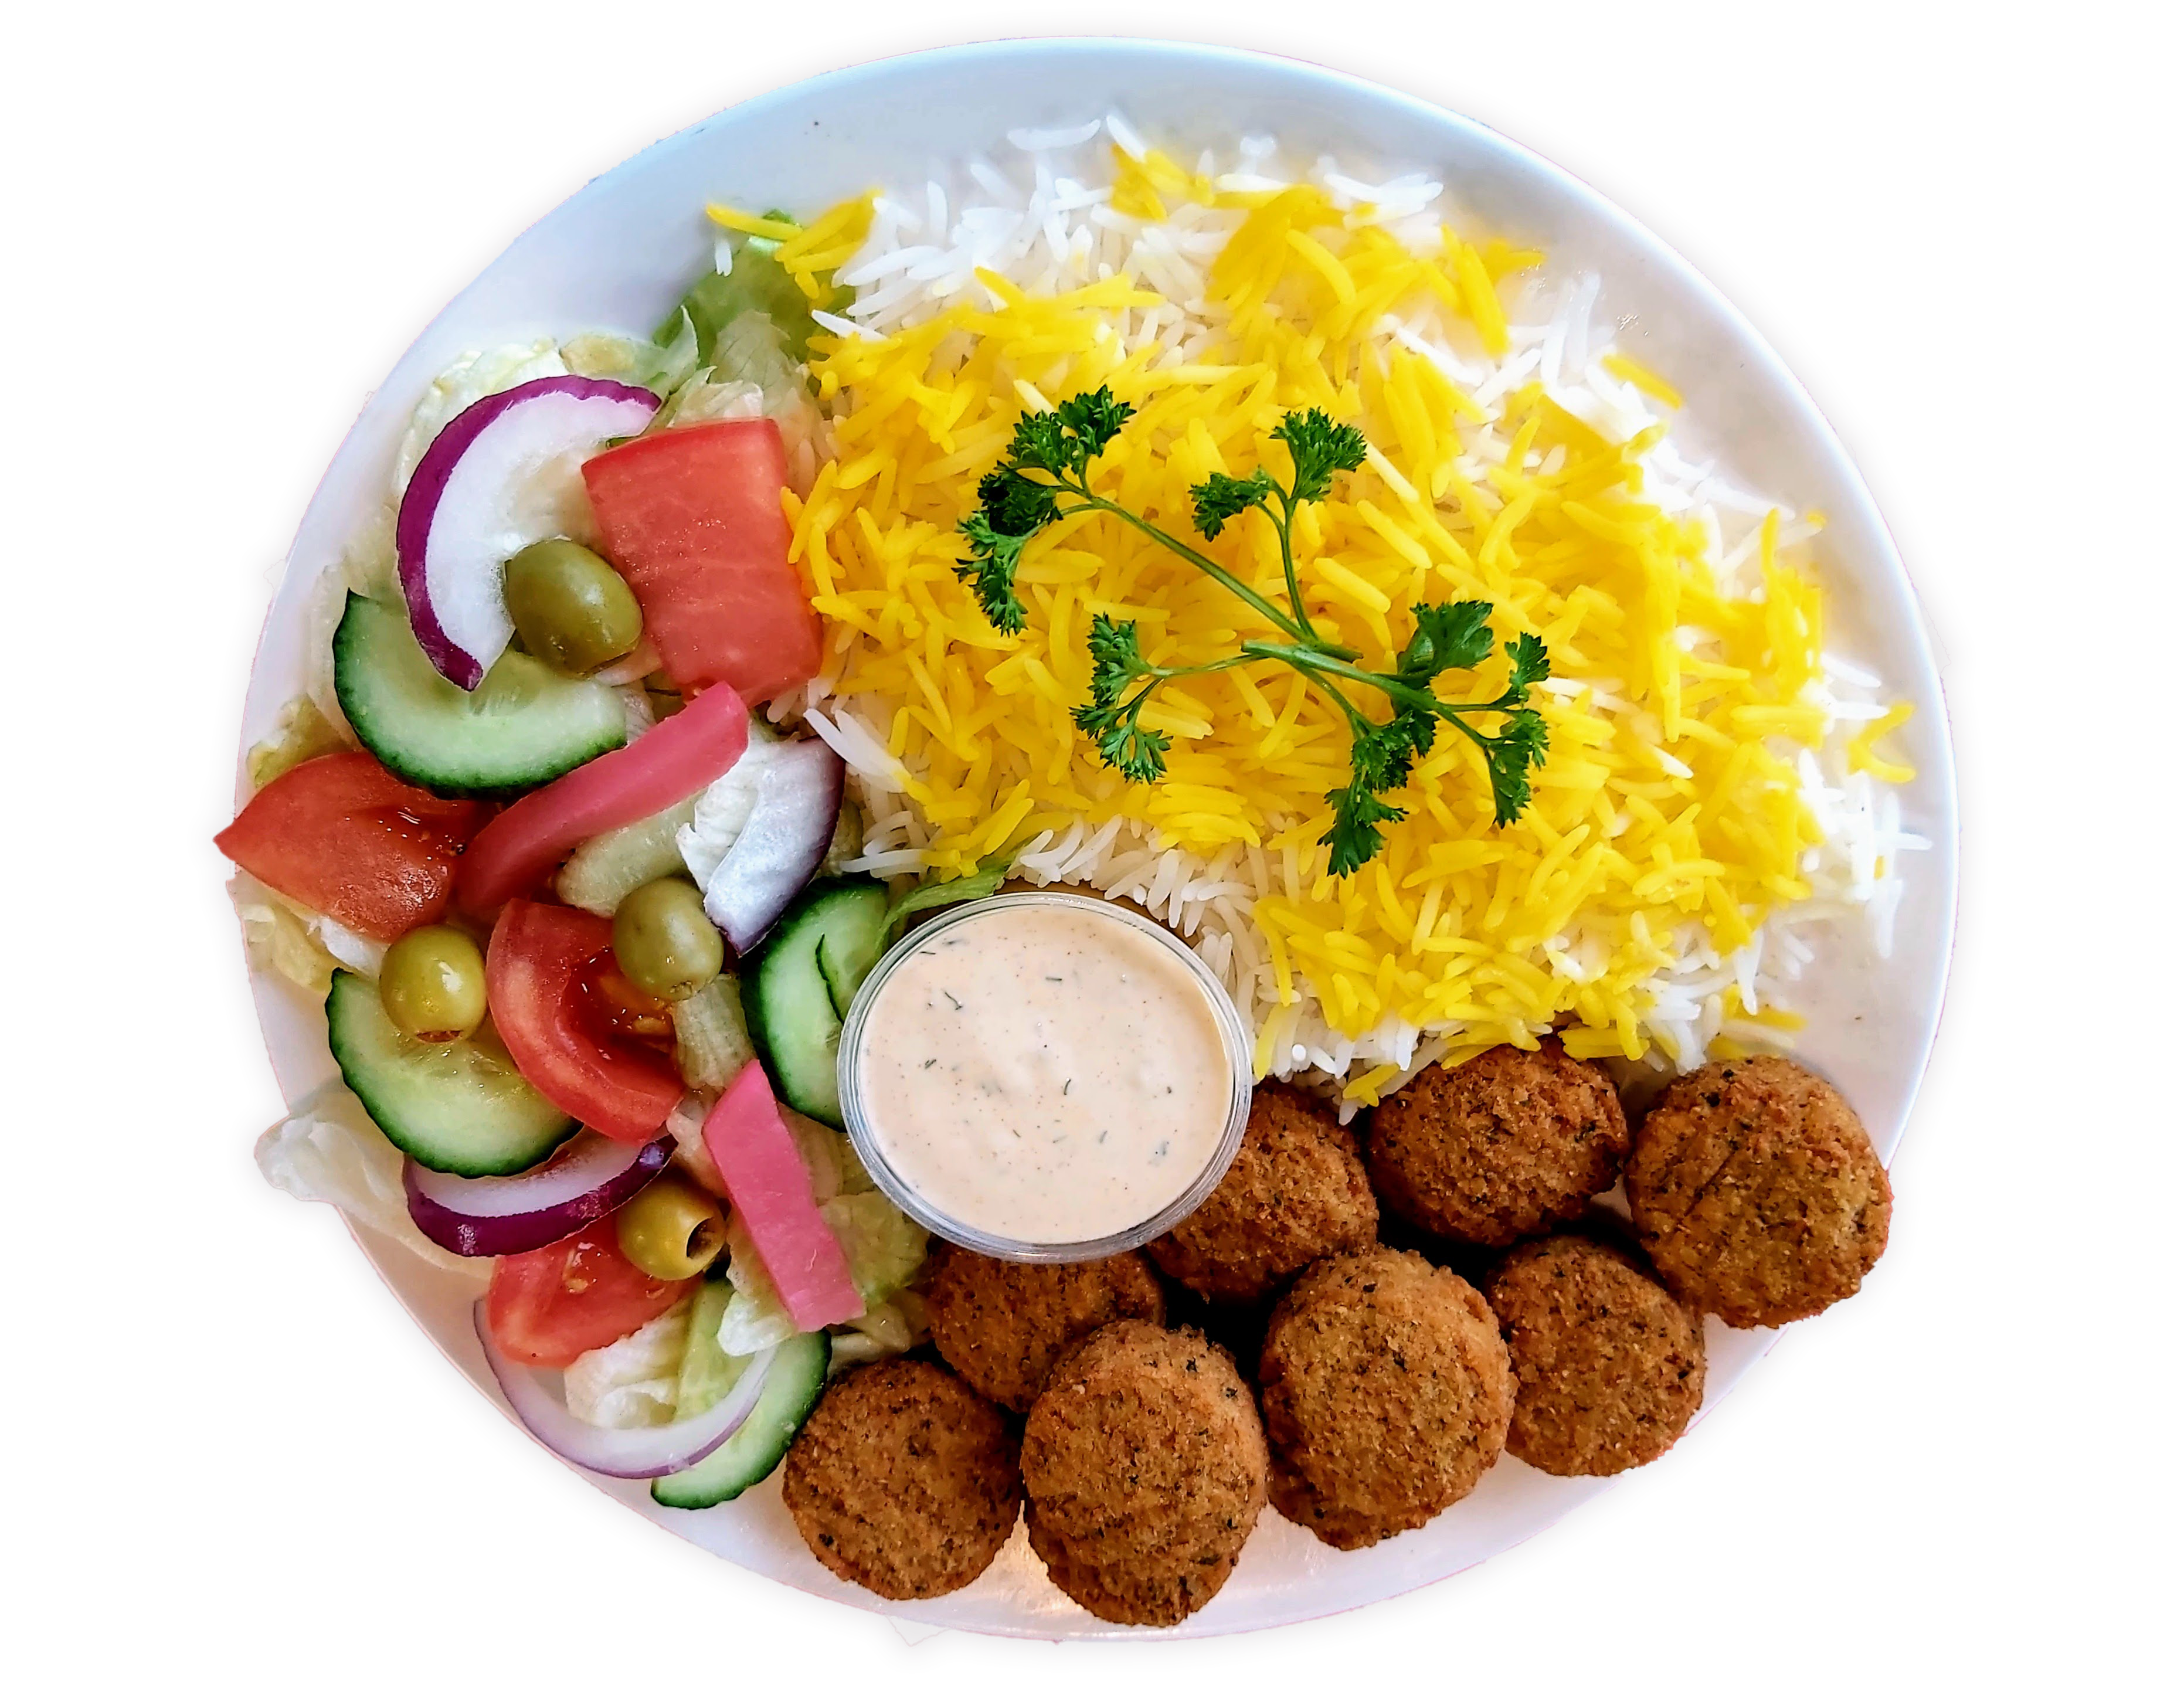 falafel with rice, salad, and garlic sauce